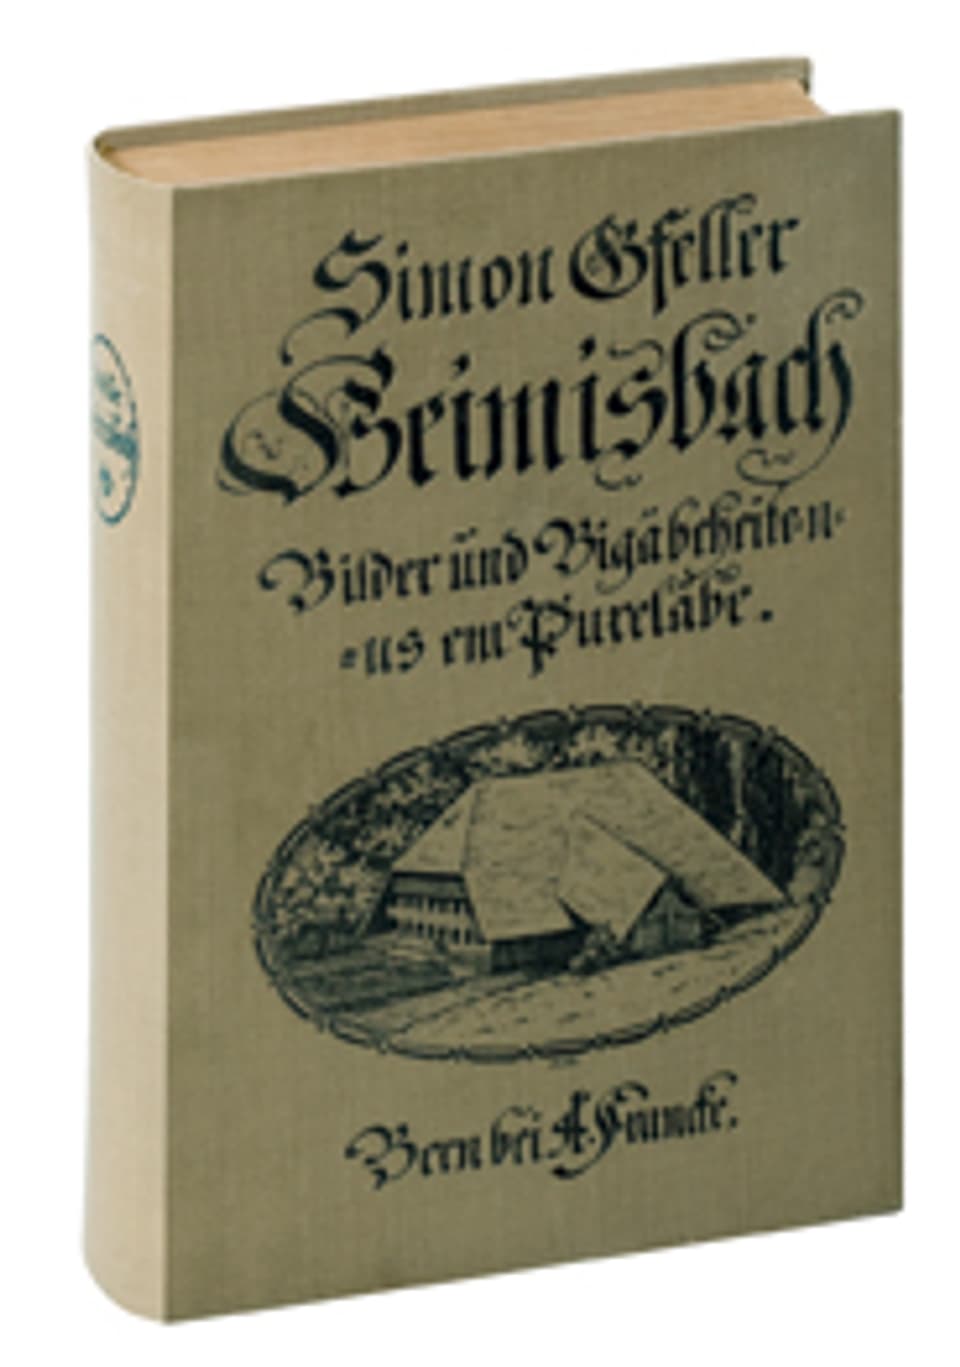 Die Erstausgabe von «Heimisbach» von 1910.